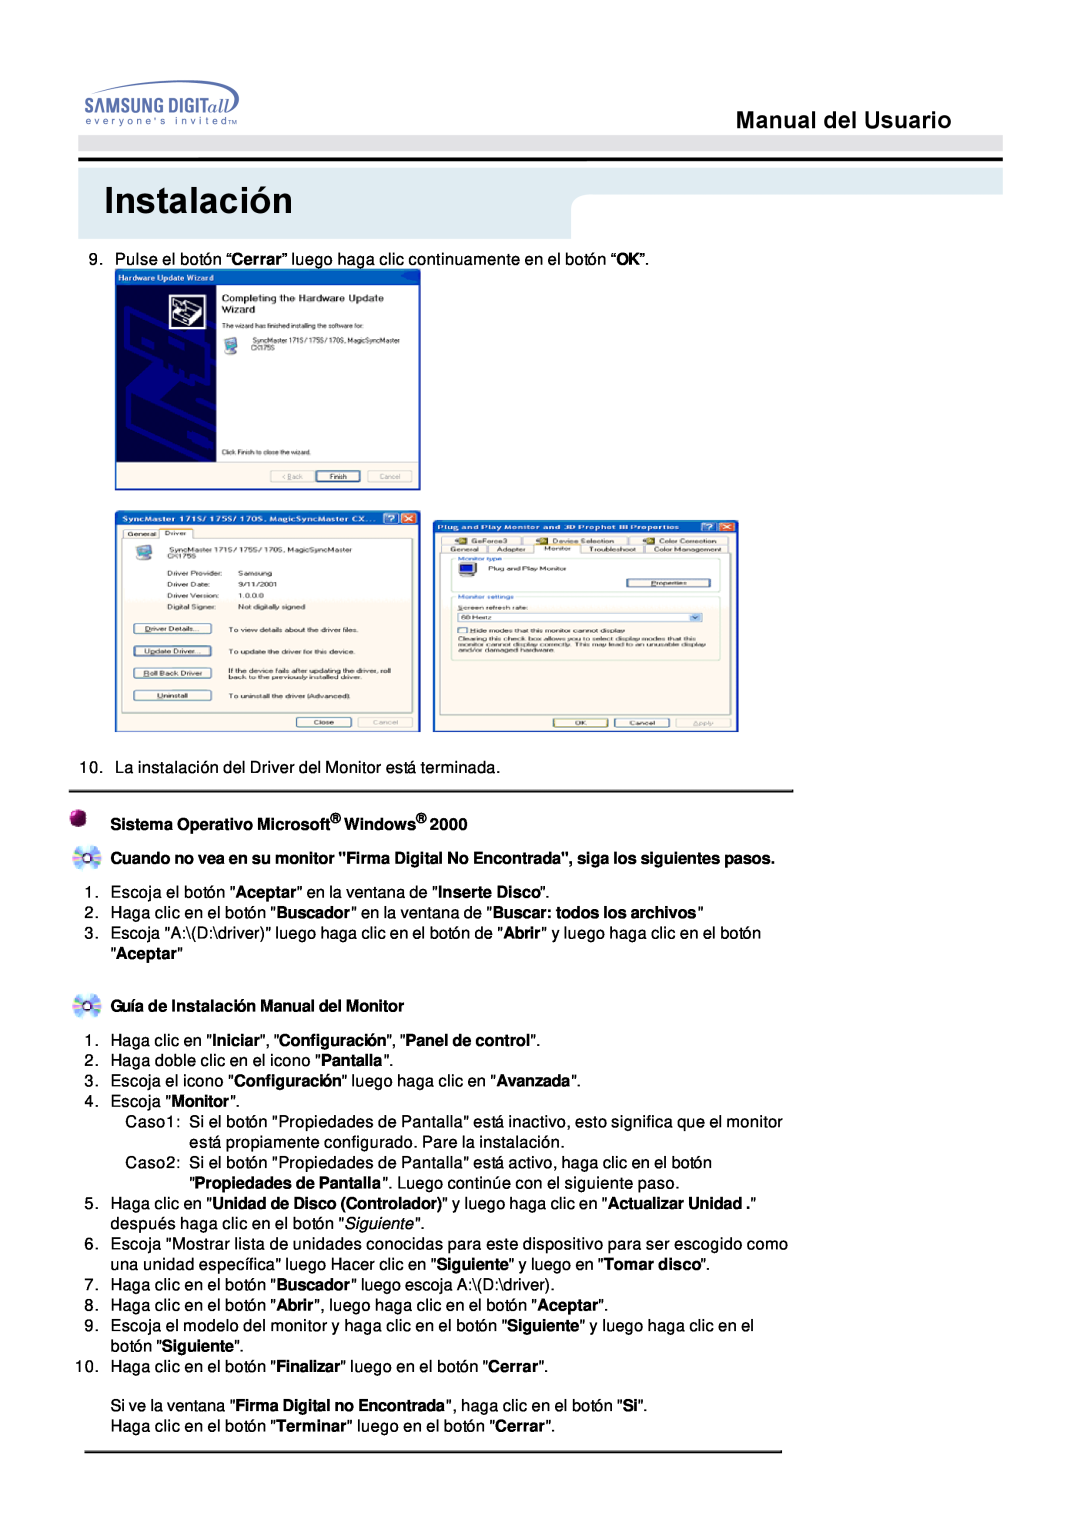 Samsung 153S manual Instalación, Manual del Usuario, Sistema Operativo Microsoft Windows 